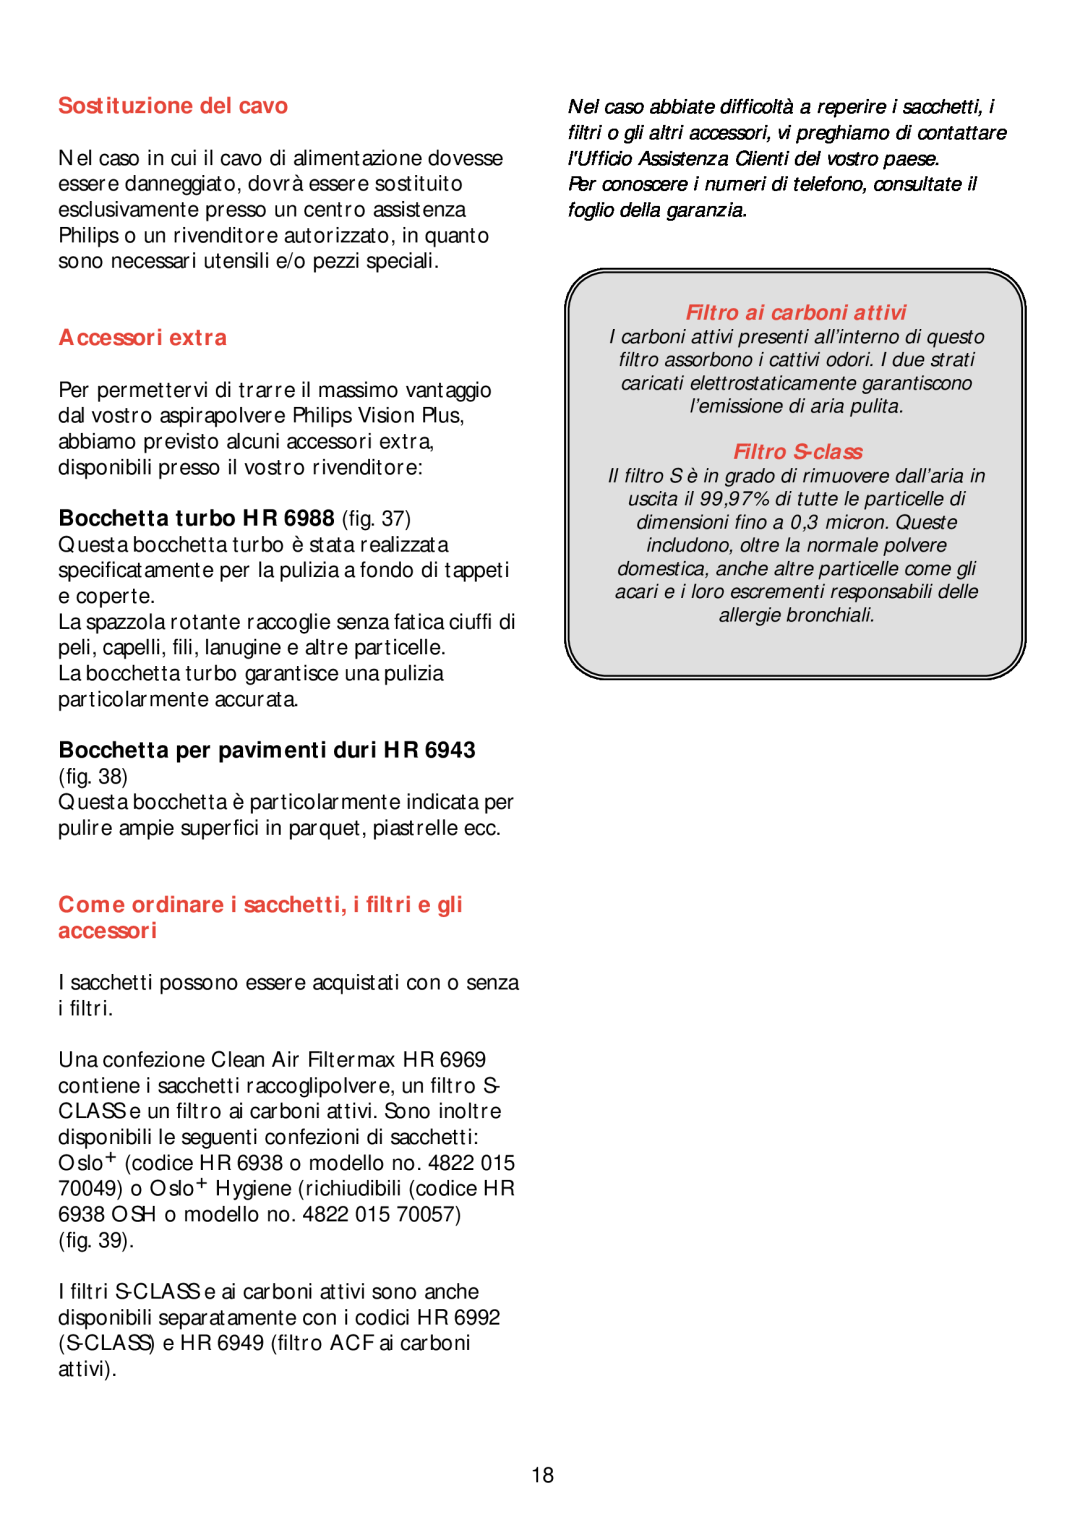 Philips HR 6988 manual Sostituzione del cavo, Accessori extra, Filtro ai carboni attivi, Filtro S-class 